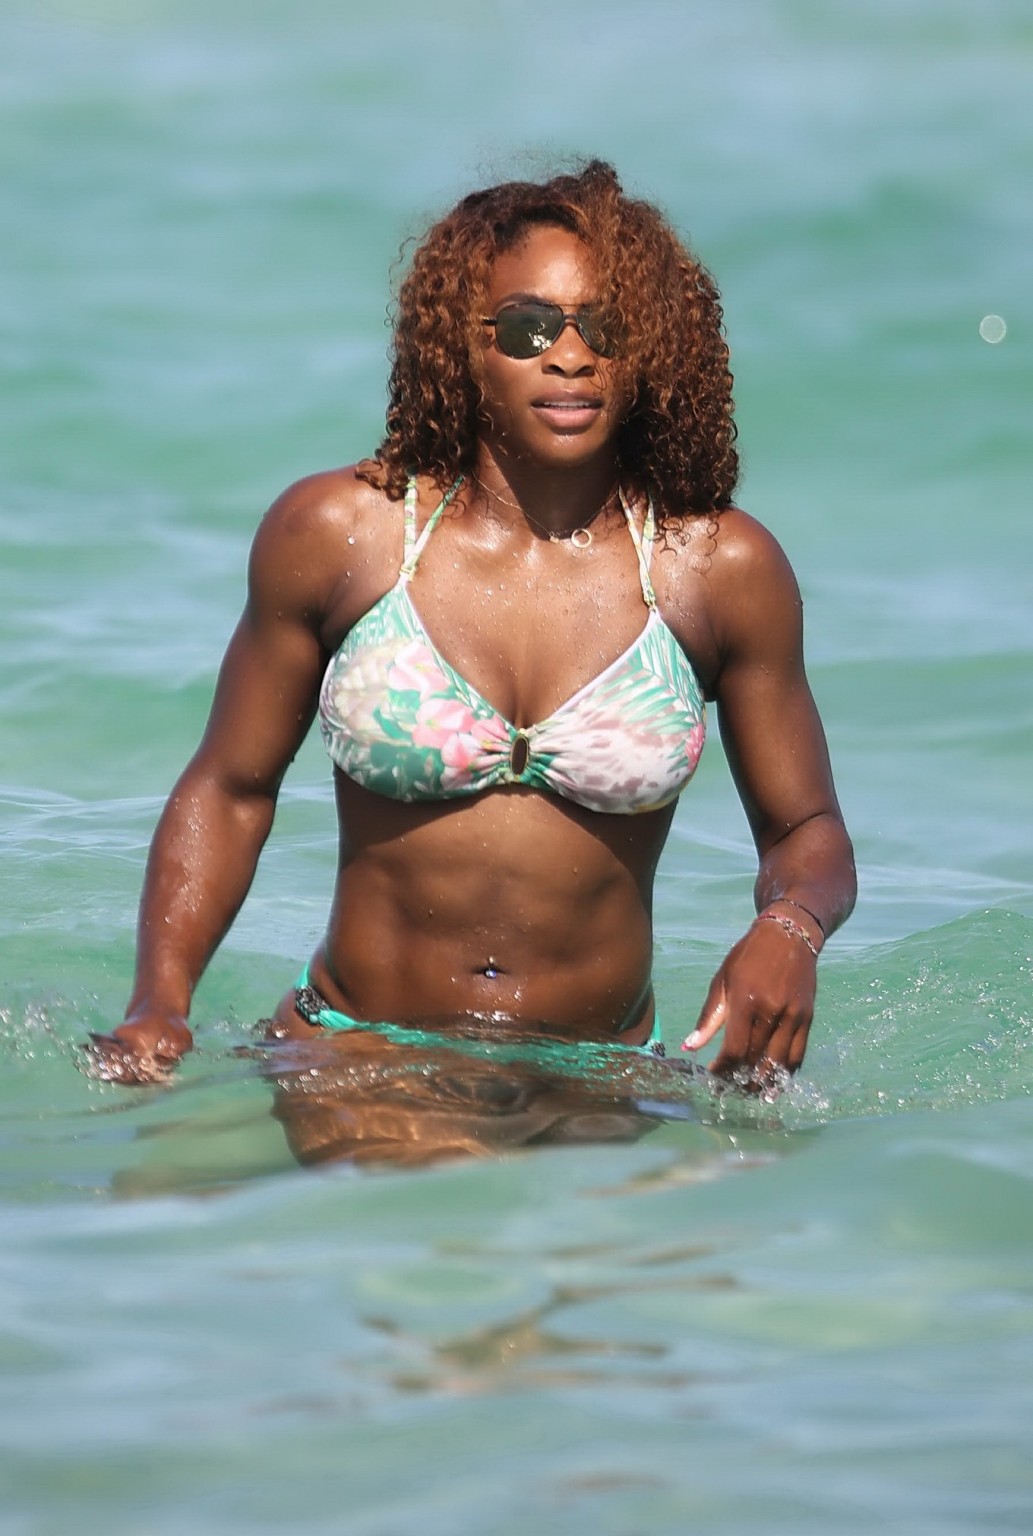 Serena williams che mostra le sue curve del bikini alla spiaggia in miami
 #75228629